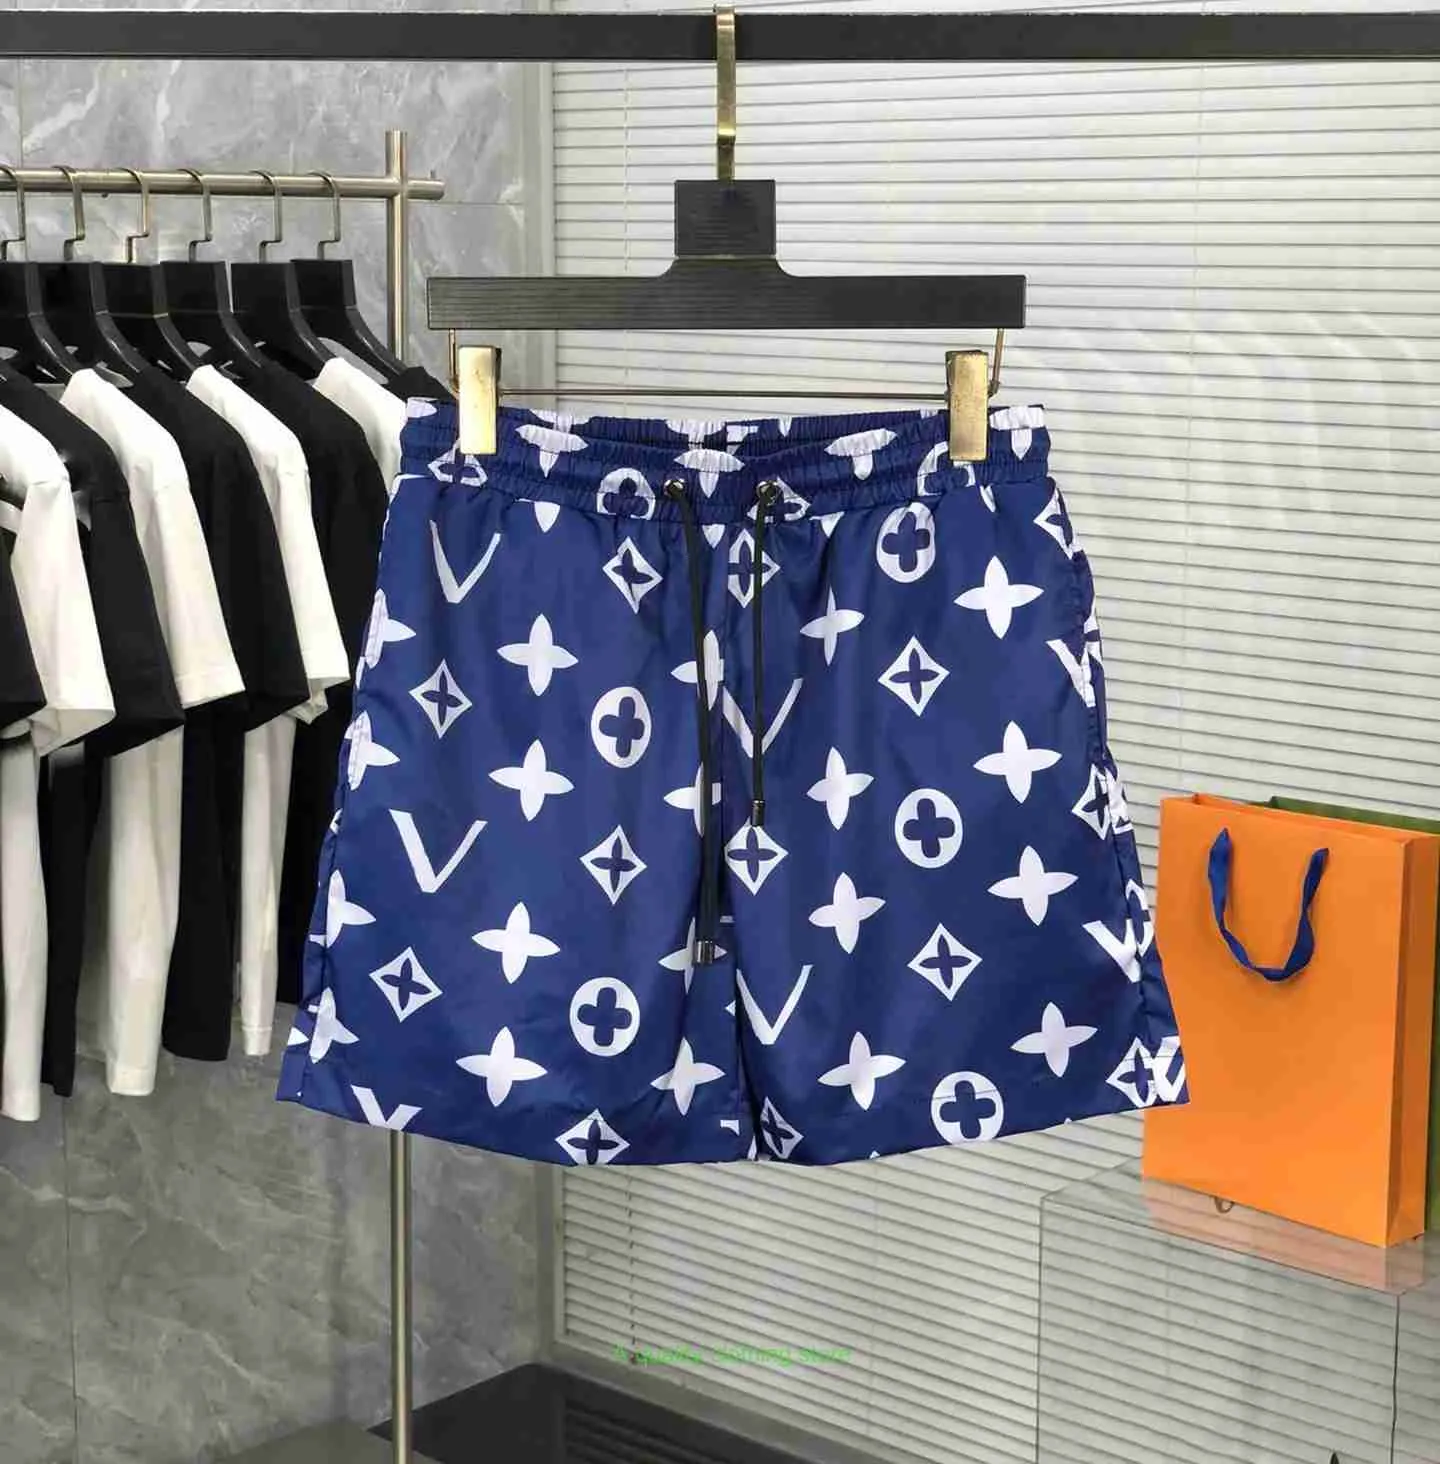 Projektant Mens Shorts Spodnie plażowe europejskie i amerykańskie marka